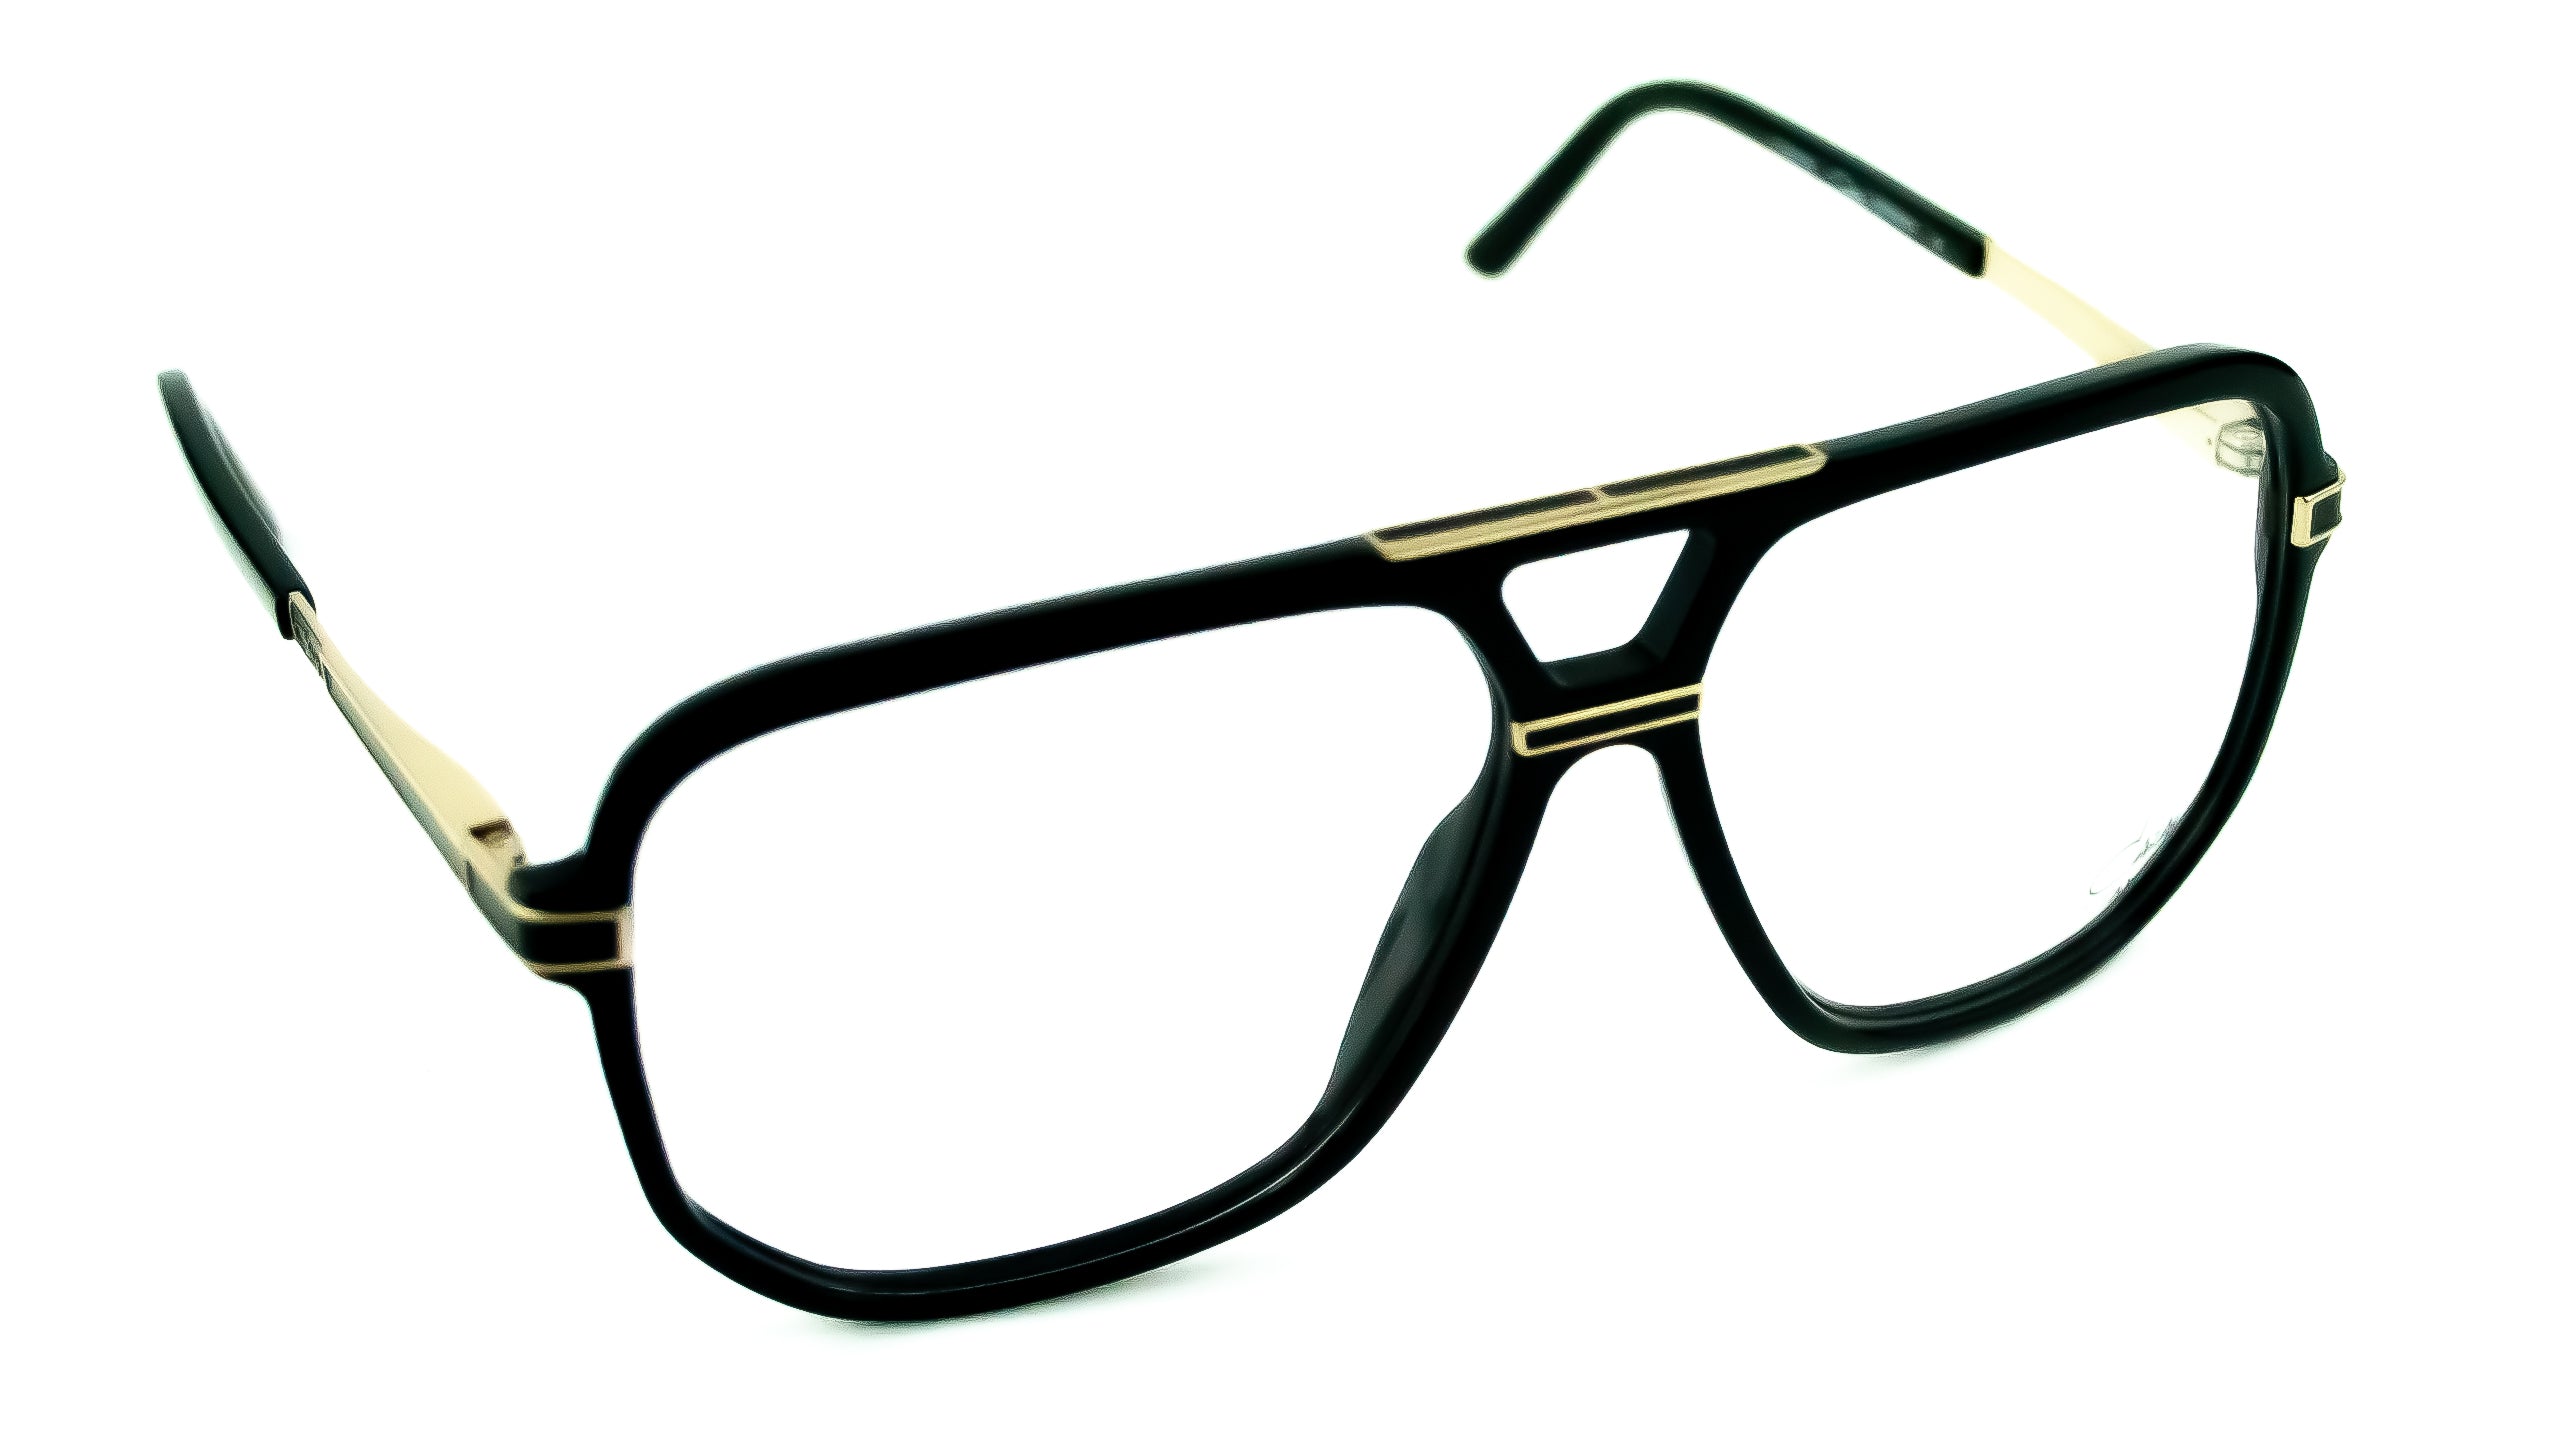 Cazal Model 6025 Col 001 Black/Gold Glasses